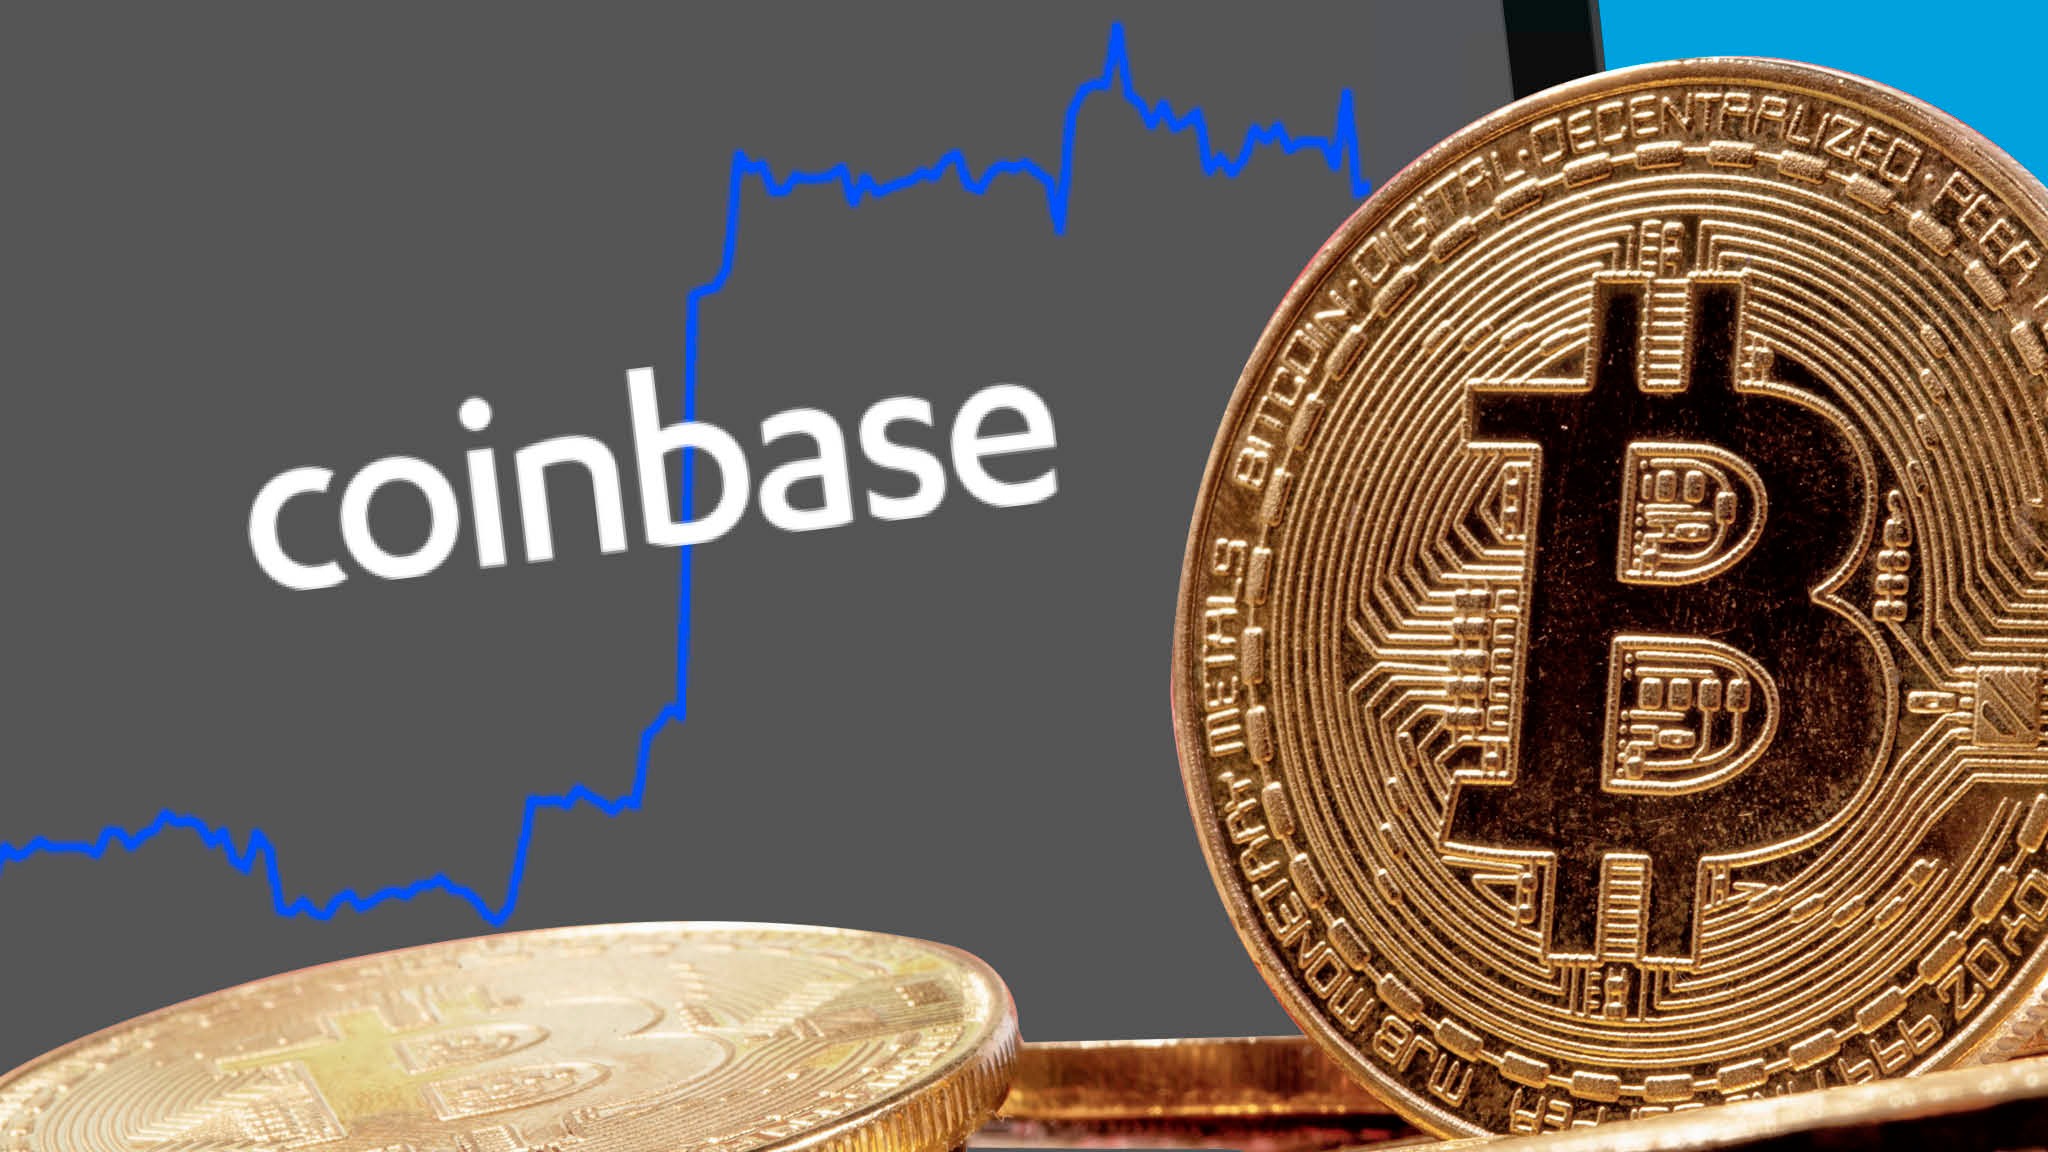 parduoti bitcoin apie coinbase kanadą